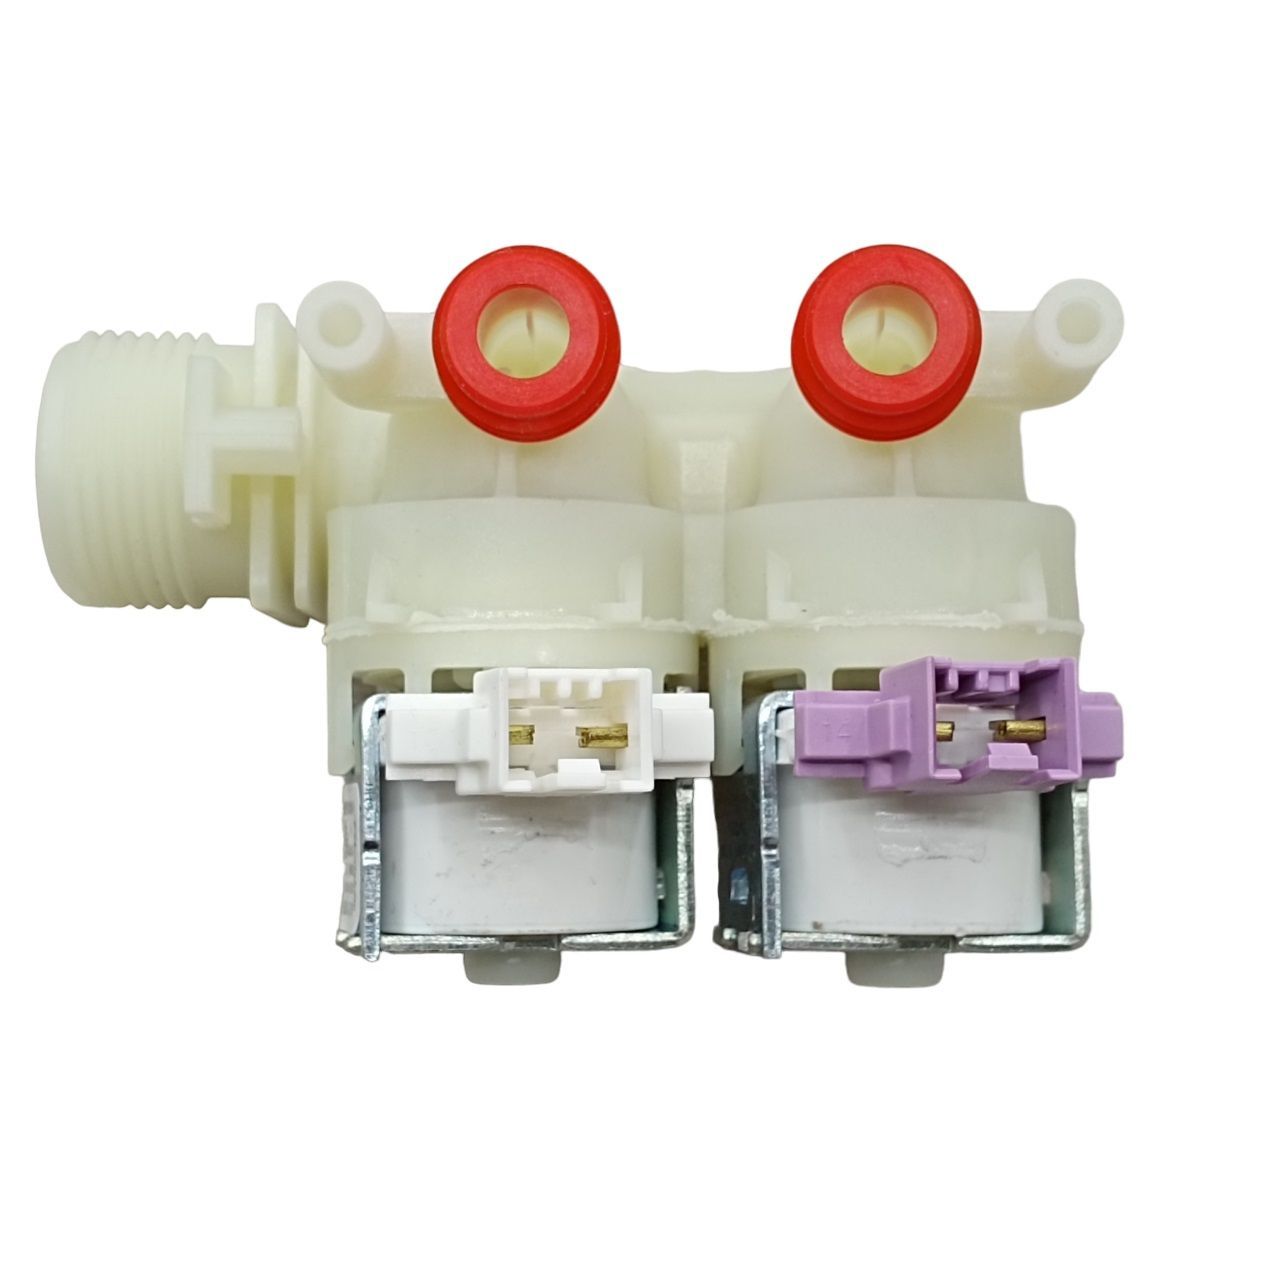 Электромагнитный клапан SKL 110333un впускной клапан 3 8 и 1 2 подвод воды сбоку тип 380 geberit 281 004 00 1